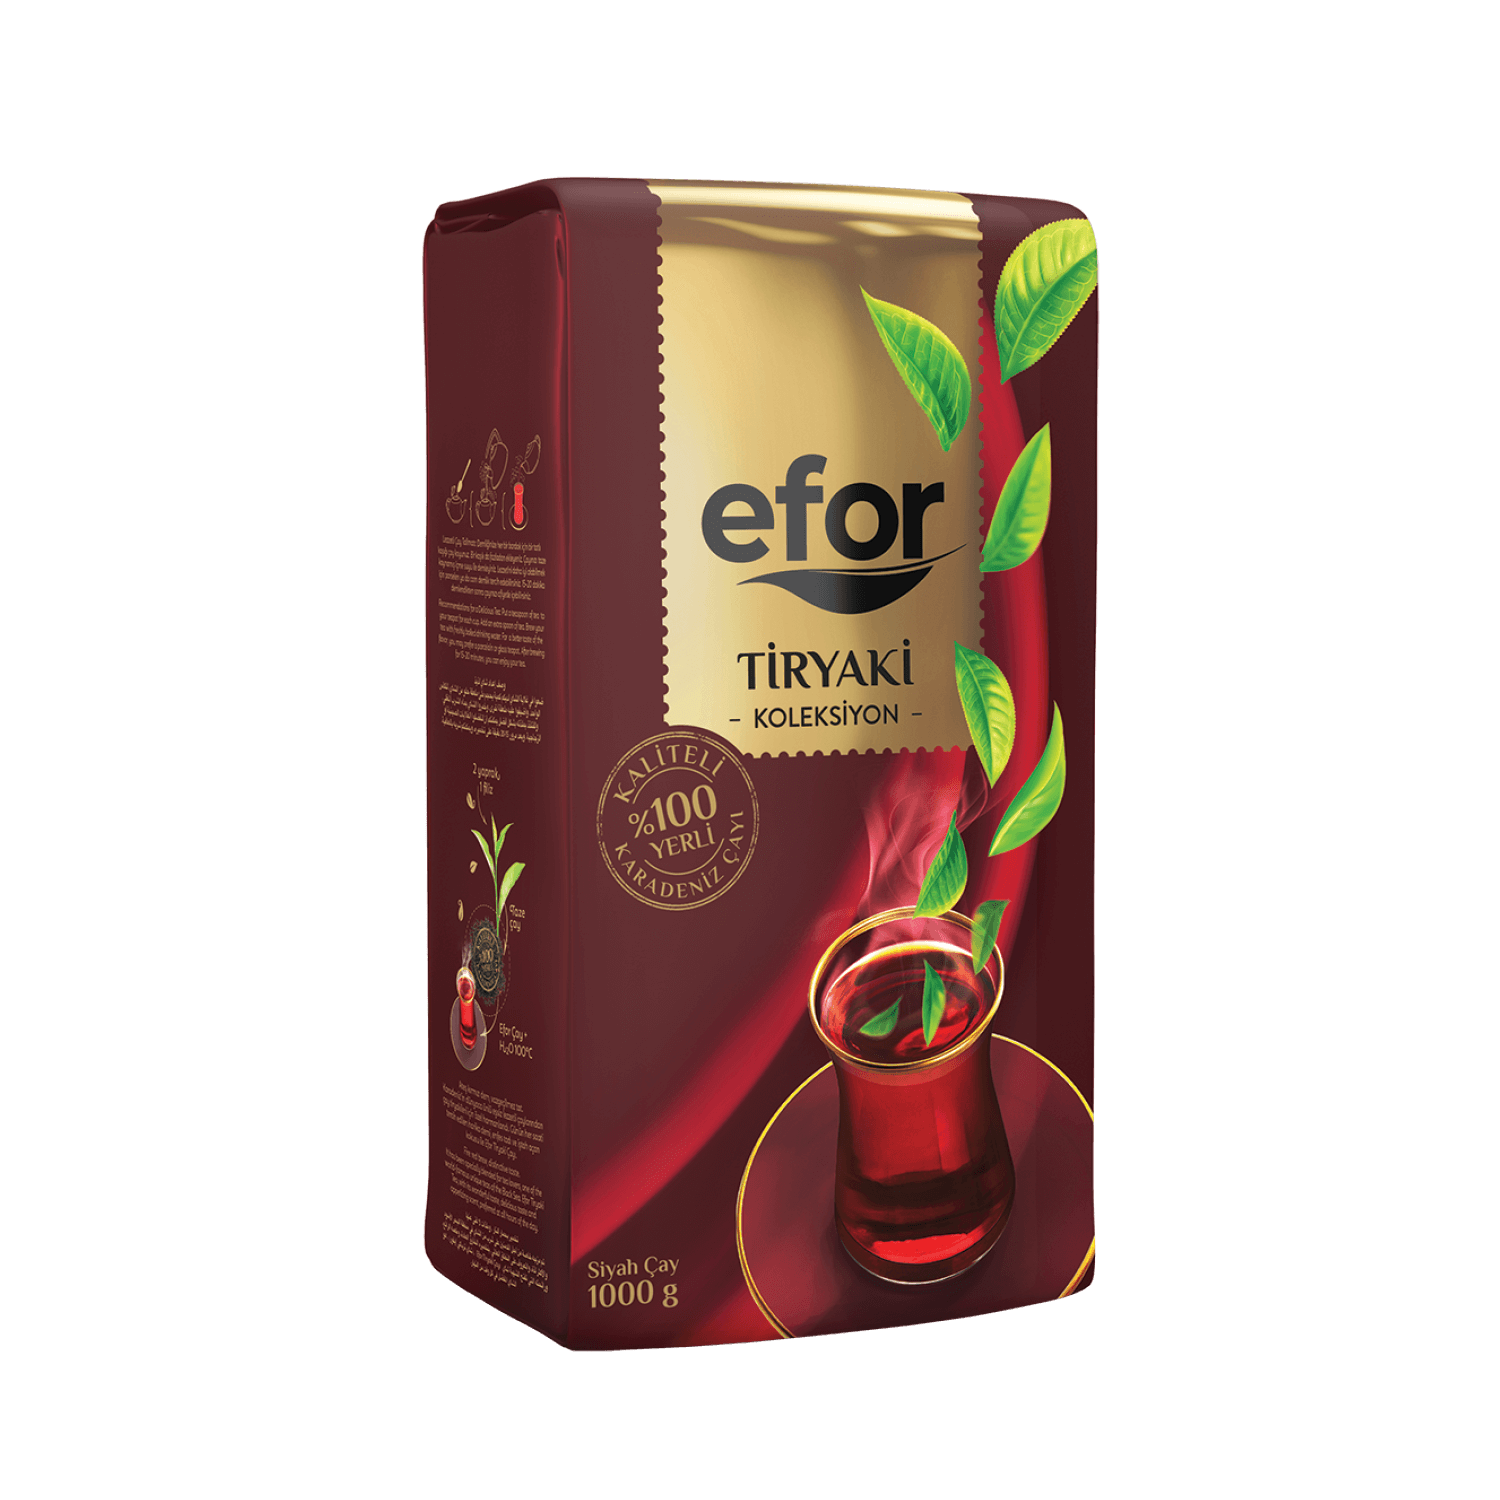 Efor Tiryaki Collection Tea 1000g